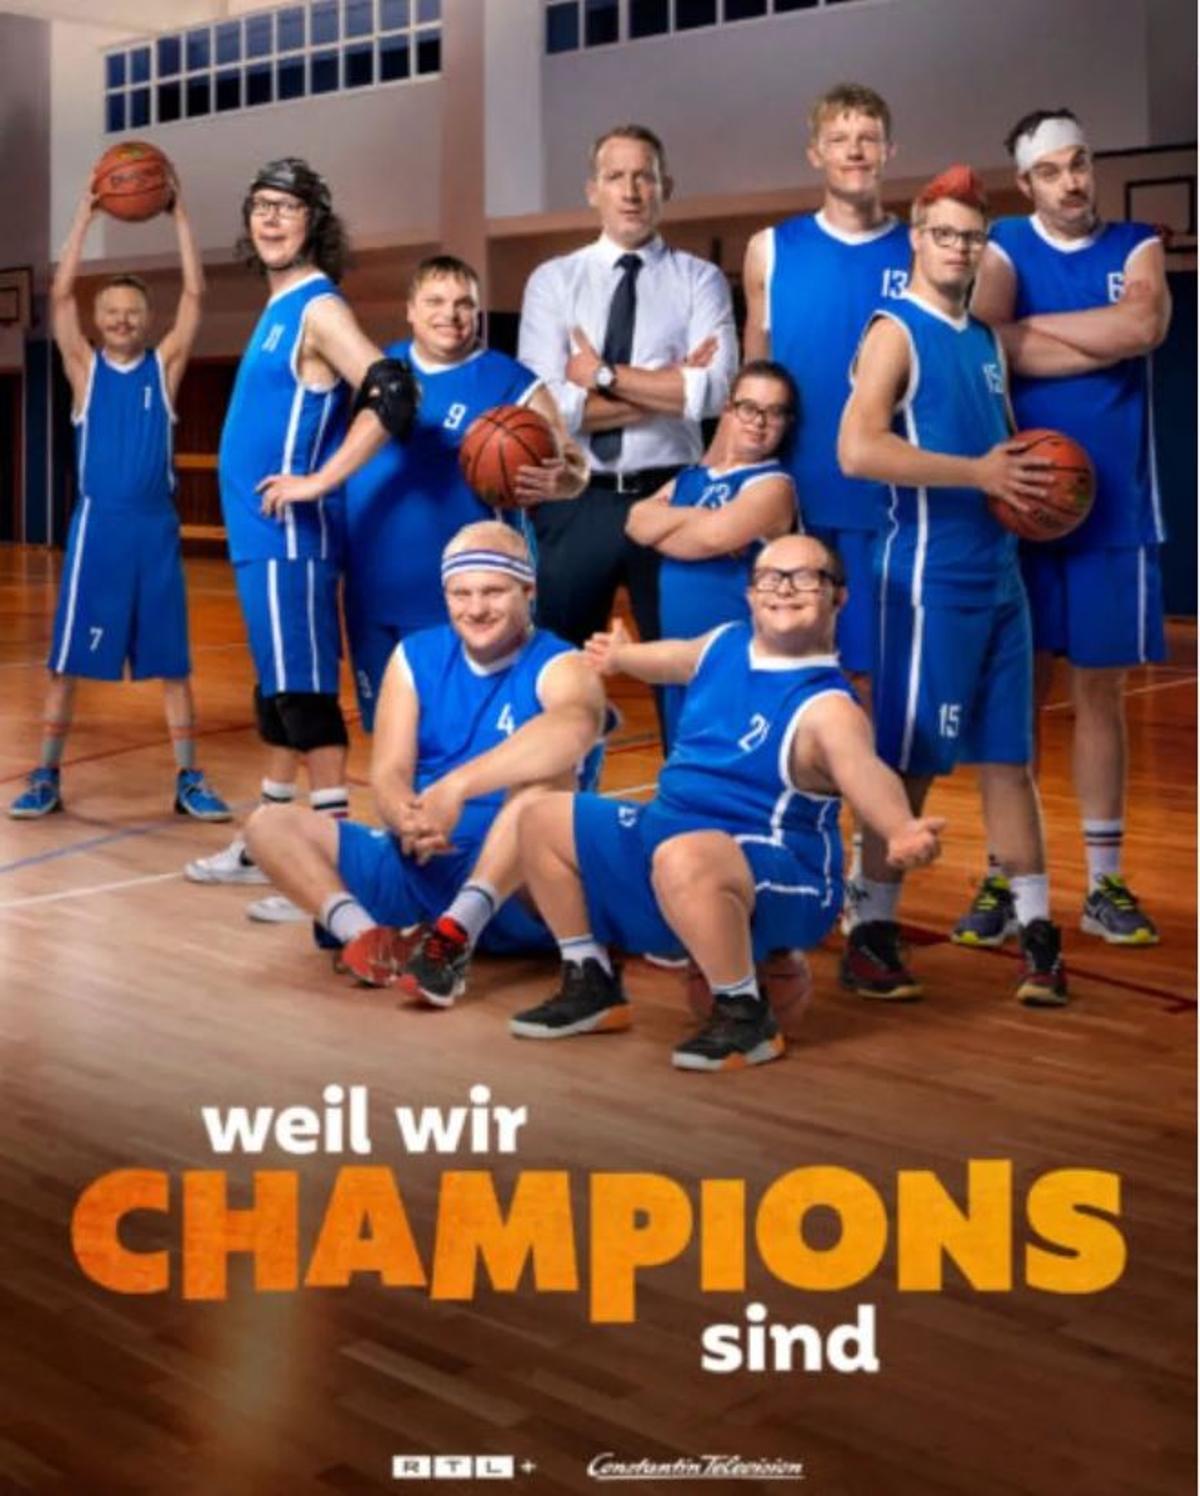 La adaptación alemana, estrenada este año, por un canal de televisión alemán.